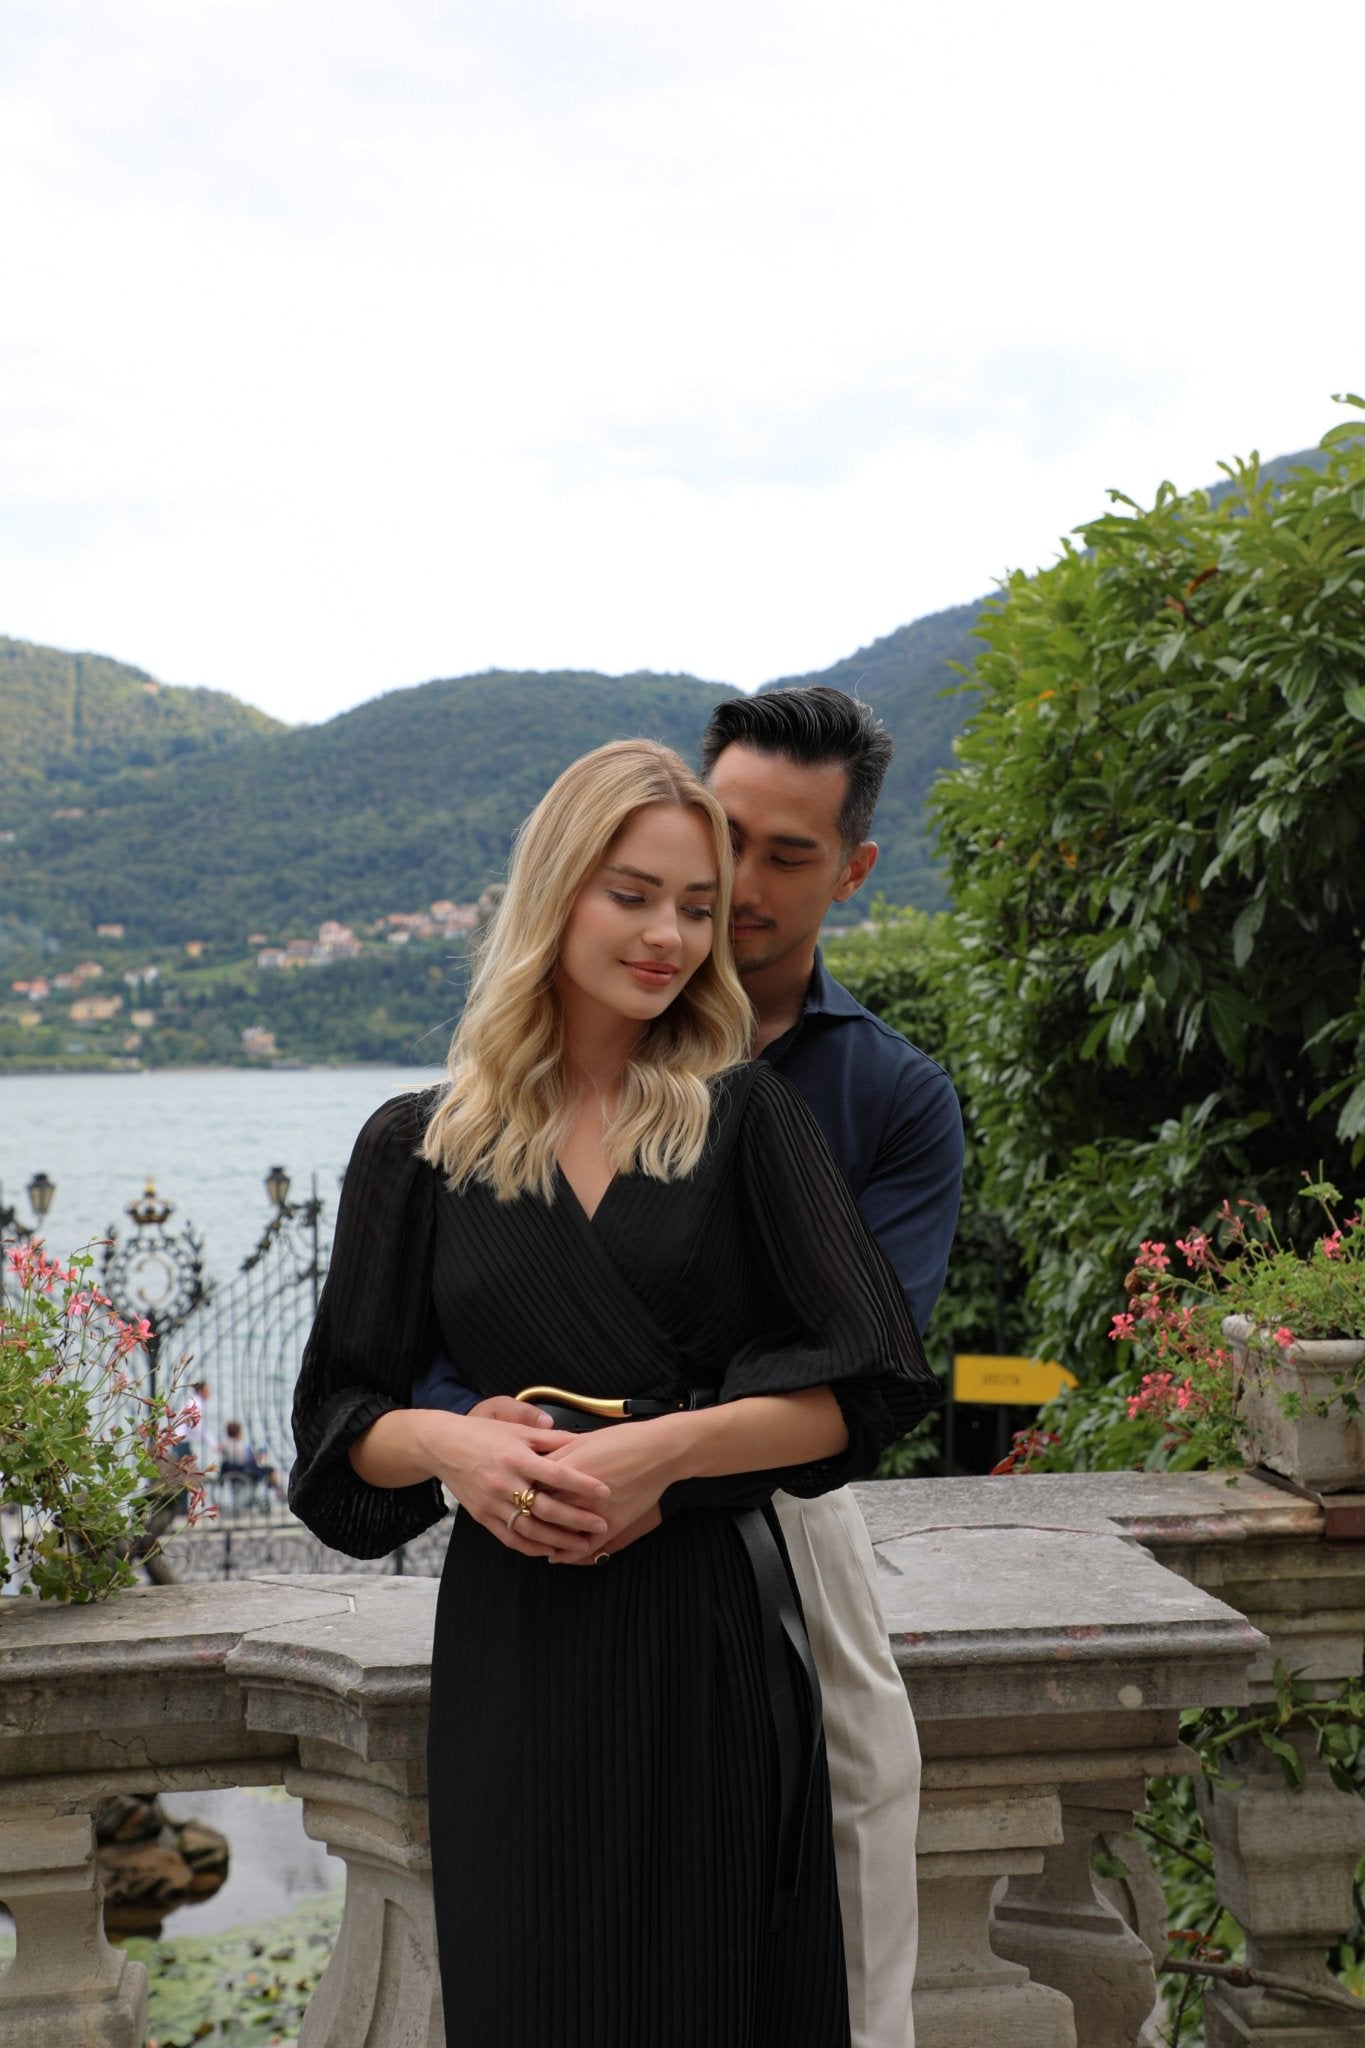 Pre-wedding Photo Shoot at Villa Carlotta - Lake Como Photographer - FRAQAIR